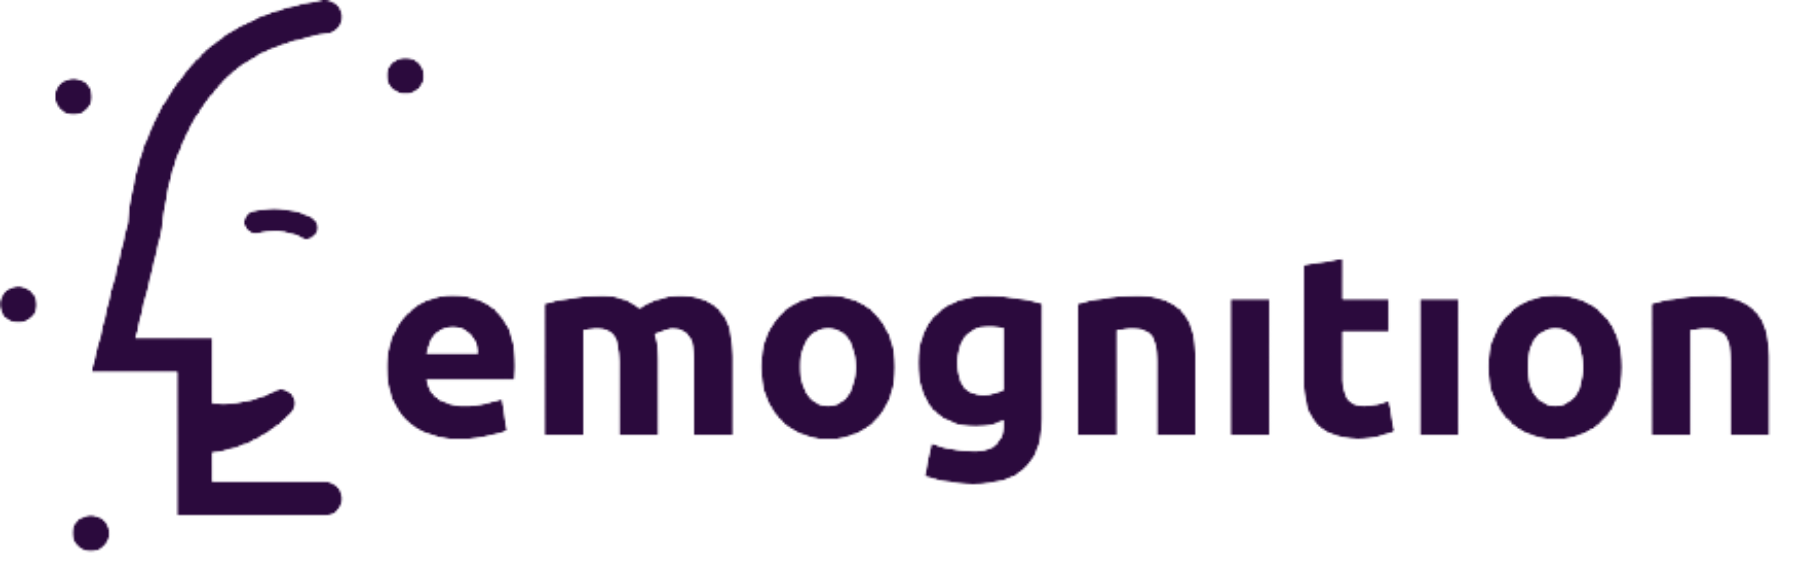 emognition-logo.png